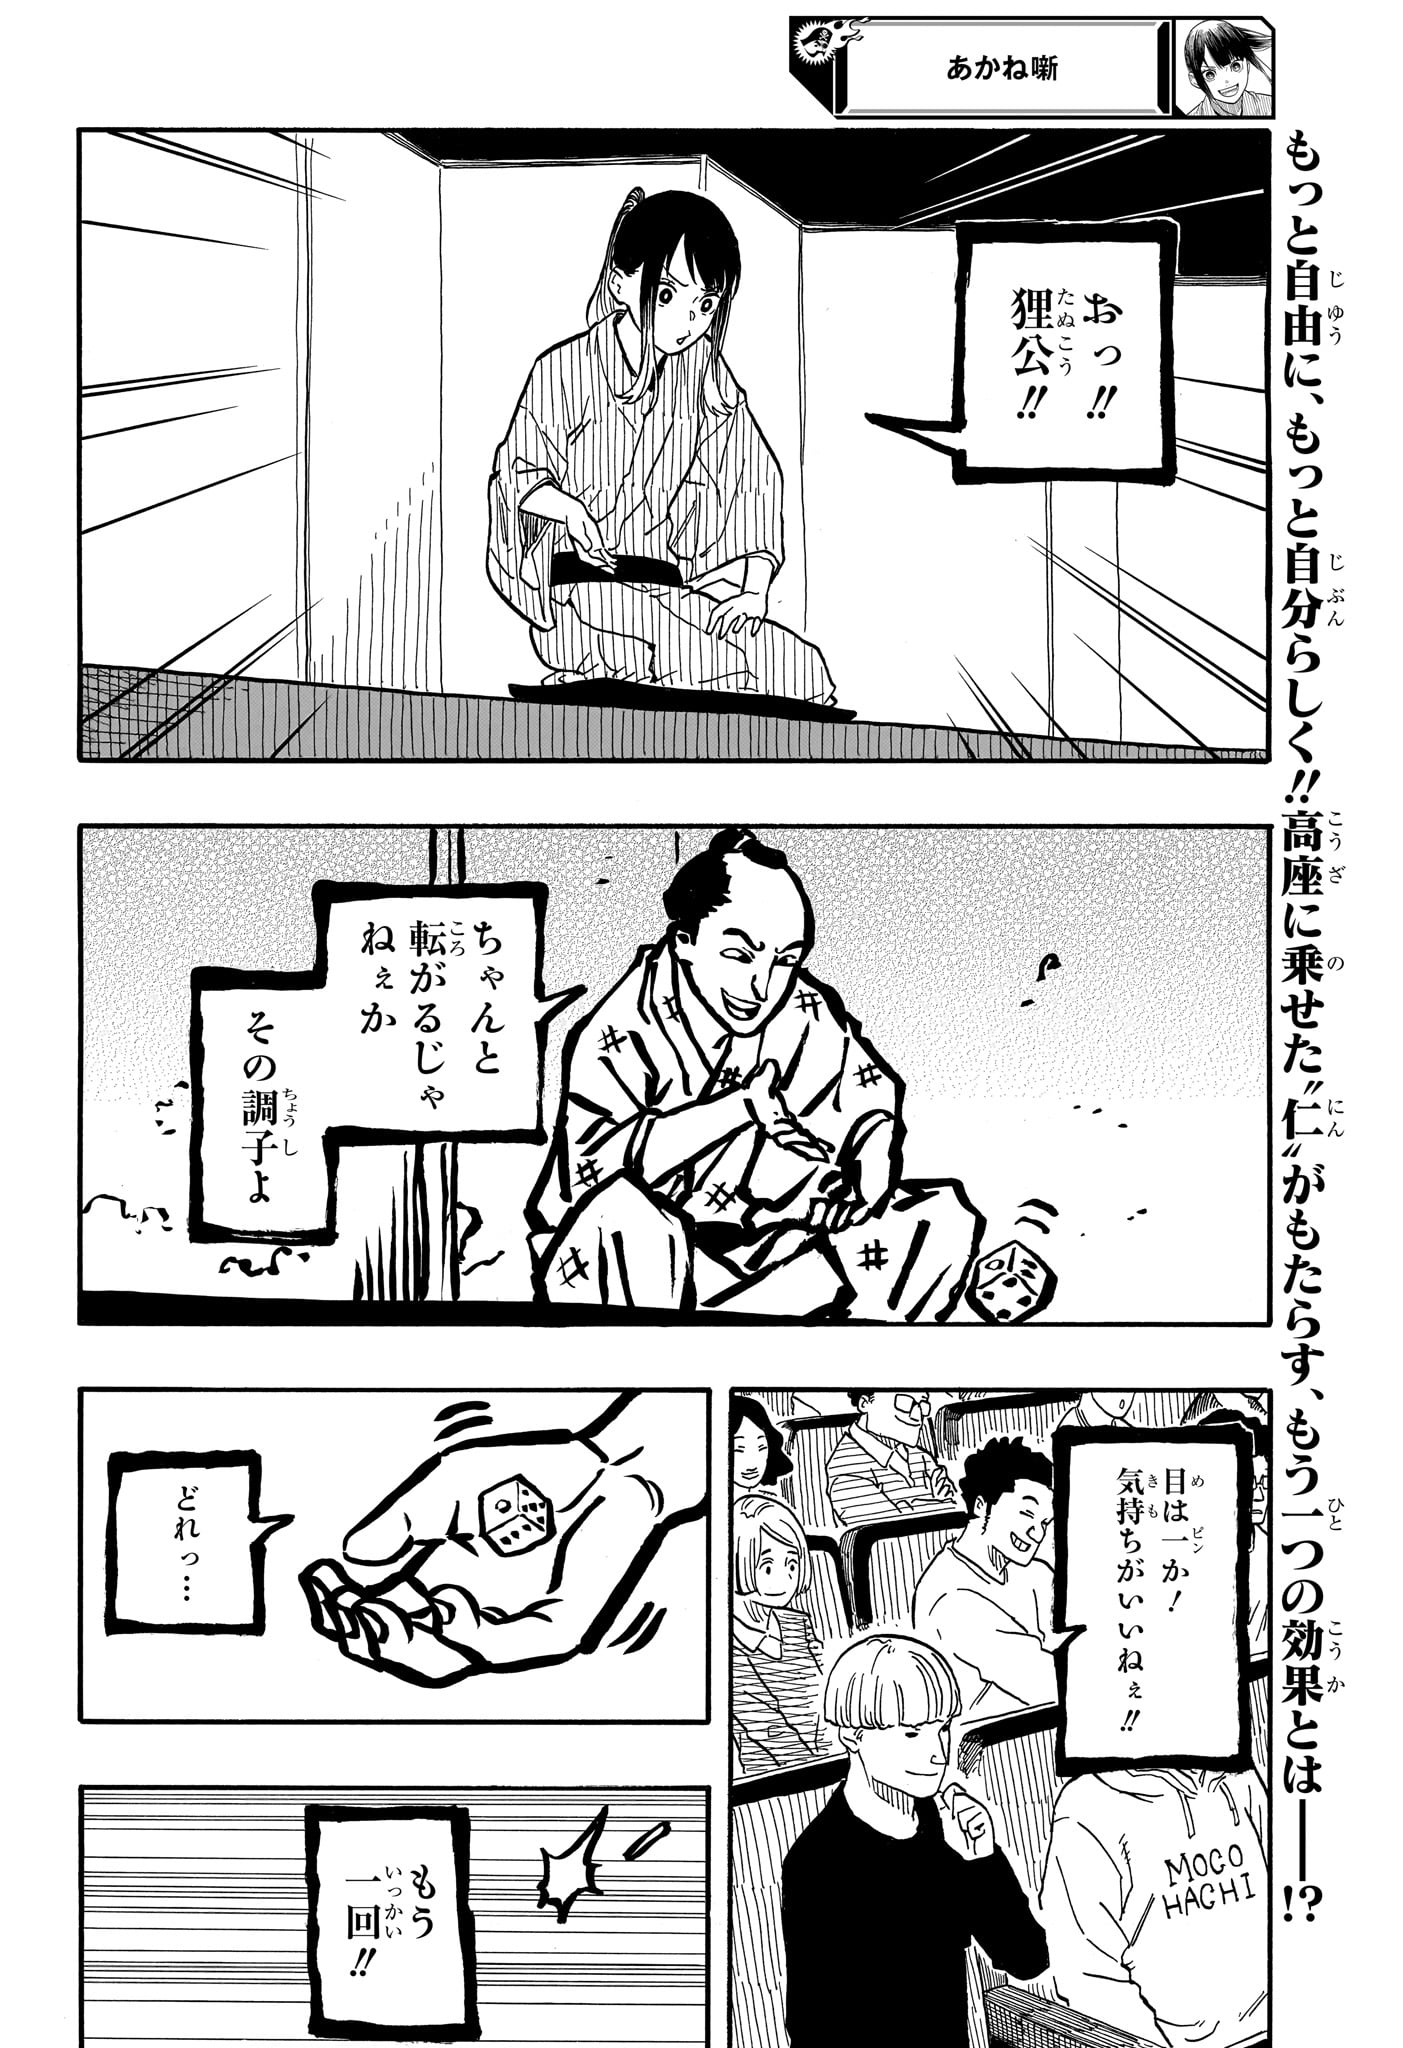 Akane-Banashi - Chapter 99 - Page 2